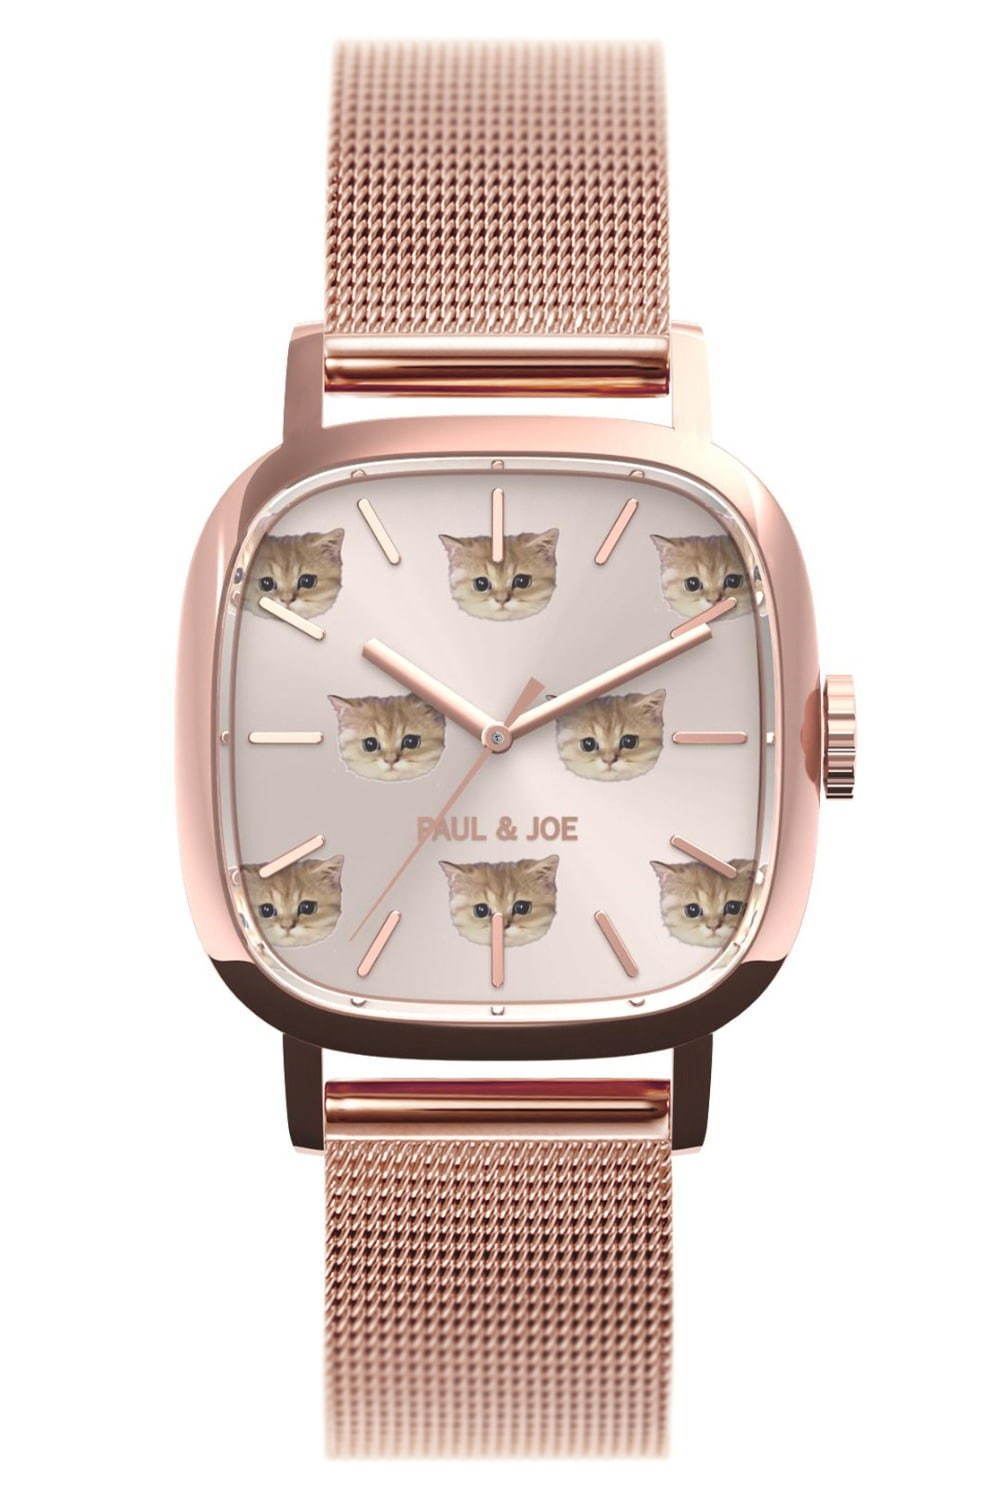 ポール &amp; ジョー“猫”モチーフの限定腕時計「スクエア ヌネット」